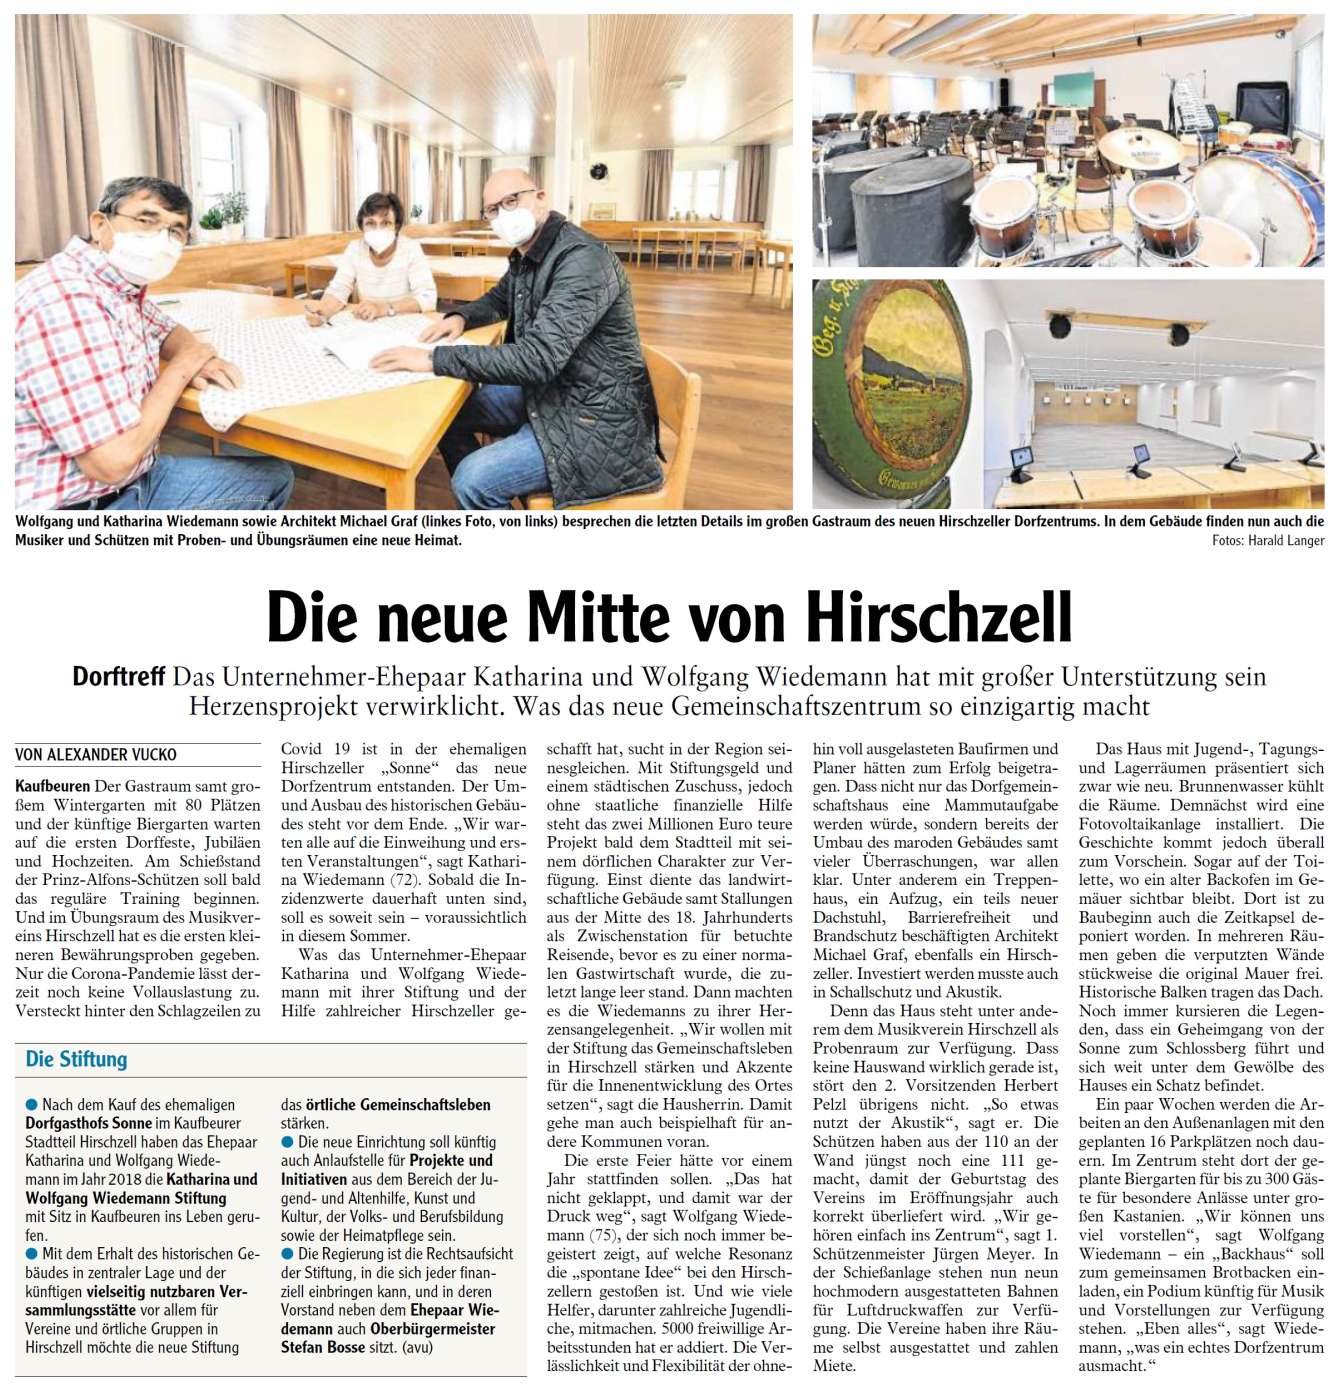 Pressebericht - Neue Mitte 2021 Dorfgemeinschaftshaus, Hirschzell - Musikverein Hirschzell, Kaufbeuren